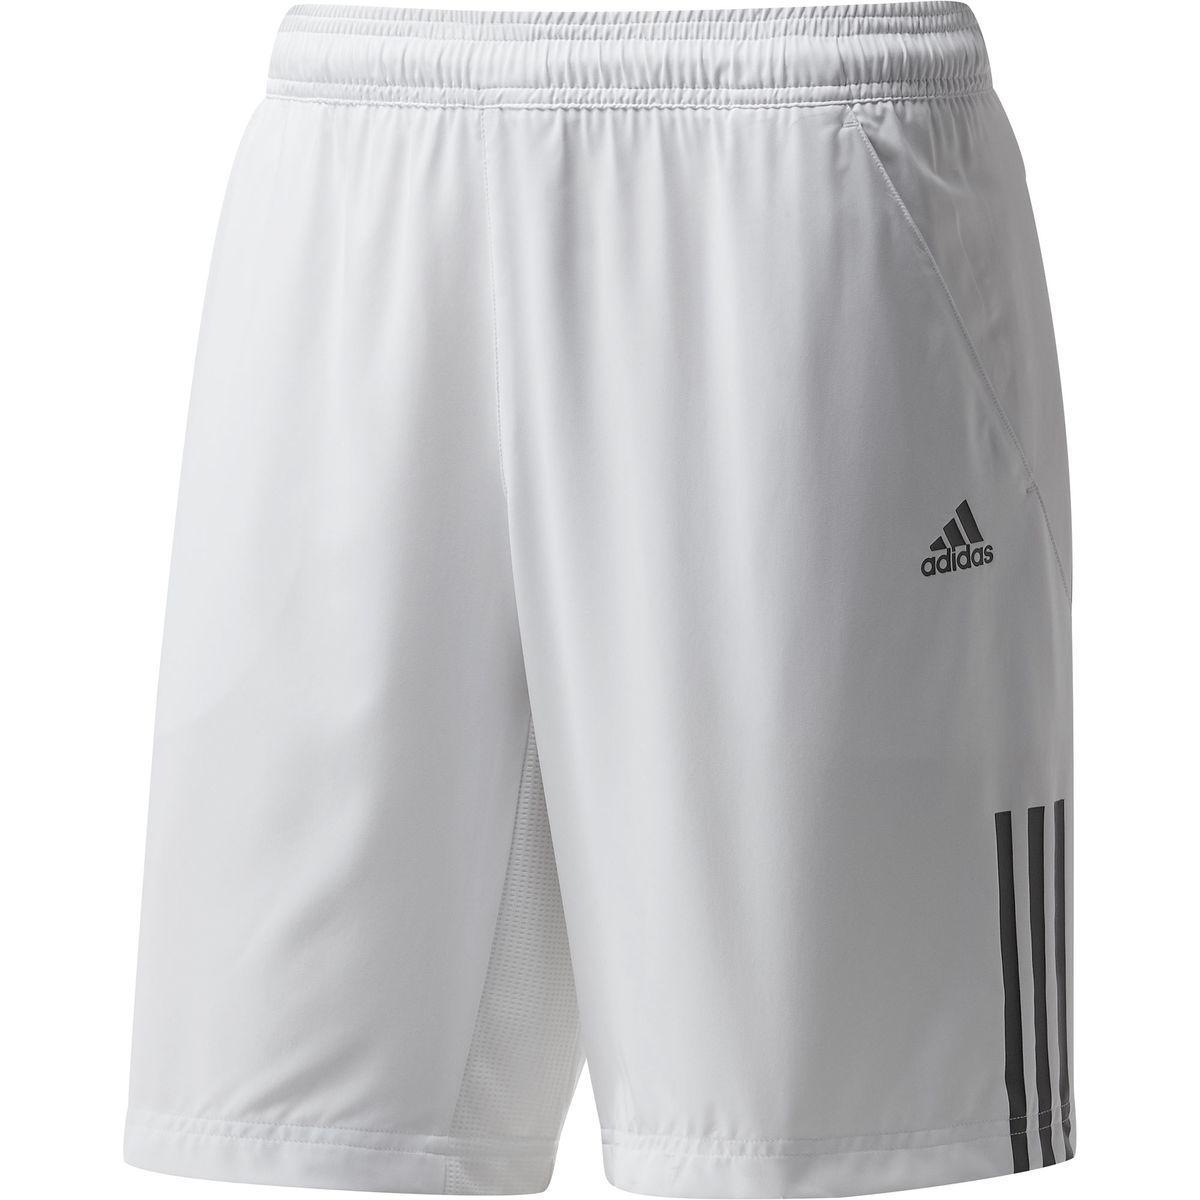 Adidas Mens Response Shorts - White - Tennisnuts.com